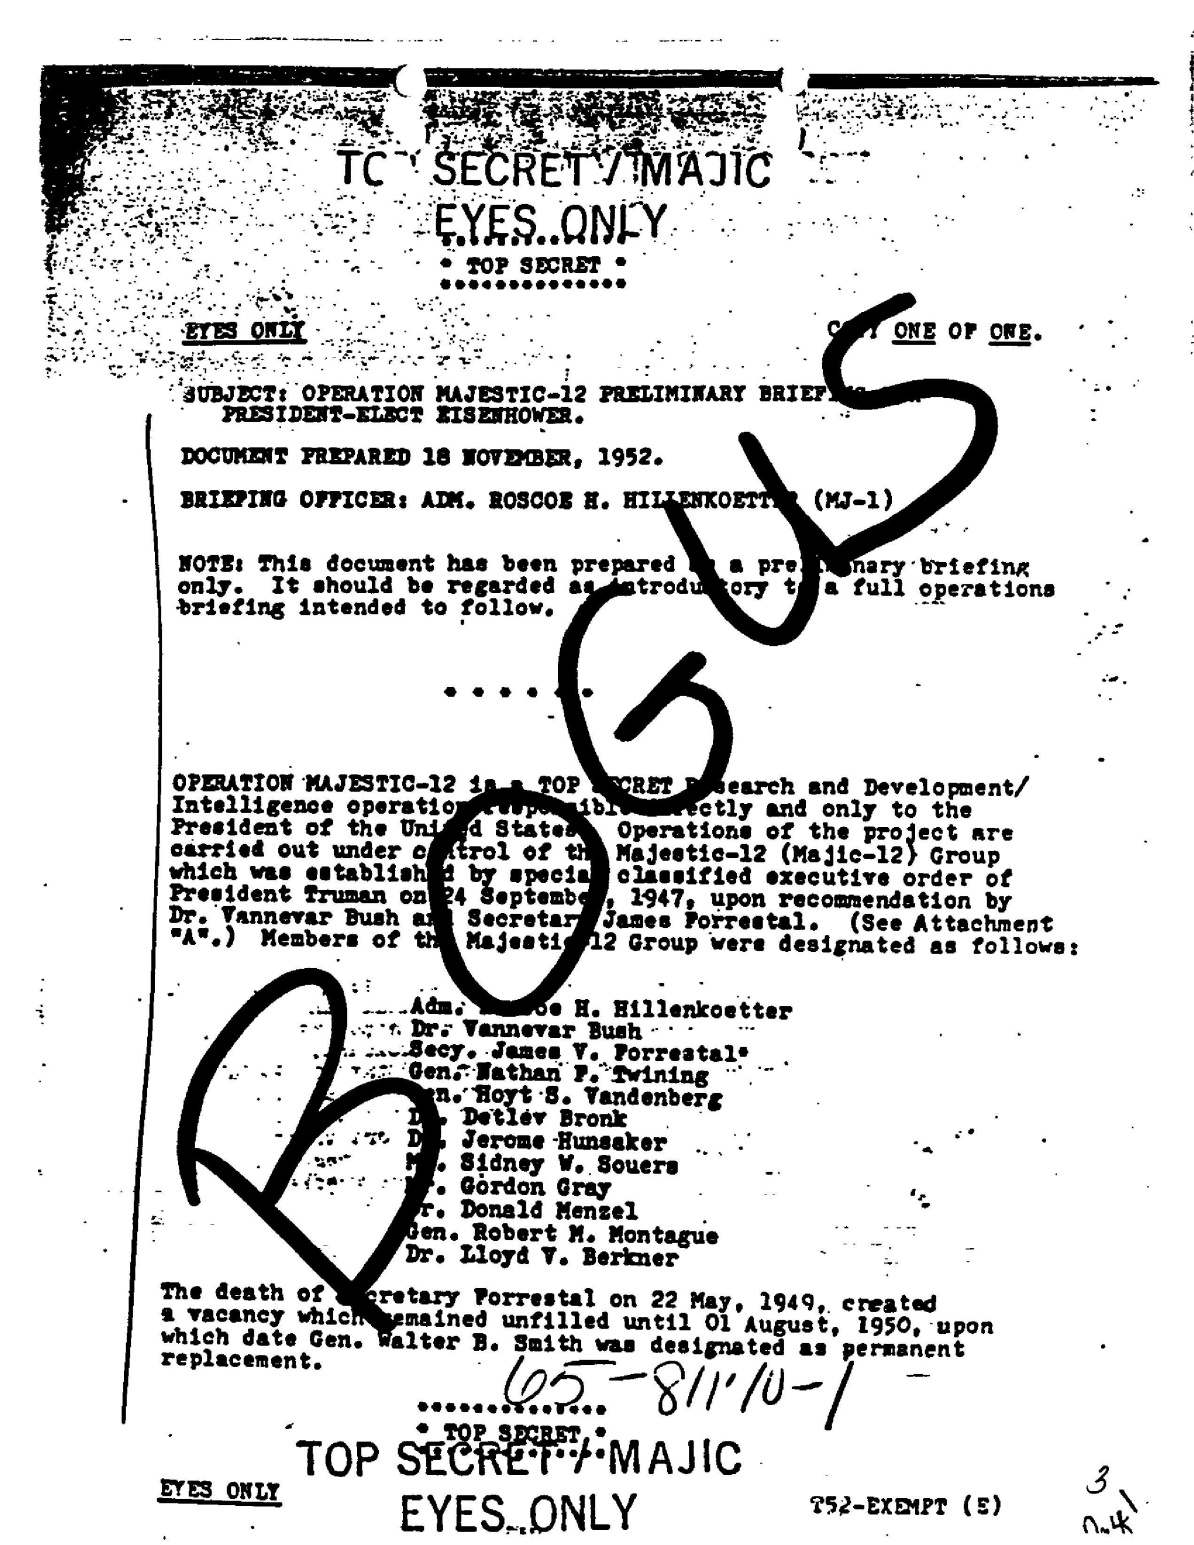 Majestic 12 1988-ban két FBI-iroda megkapta a „Majestic-12 hadművelet…” című feljegyzés hasonló változatát, amely azt állította, hogy szigorúan titkos kormányzati dokumentum. A feljegyzés az újonnan megválasztott Eisenhower elnök eligazításának tűnt egy titkos bizottságról, amelyet azért hoztak létre, hogy kihasználják egy földönkívüli repülőgép helyreállítását, és elfedjék ezt a munkát a nyilvános vizsgálat elől. A légierő vizsgálata megállapította, hogy a dokumentum hamis.